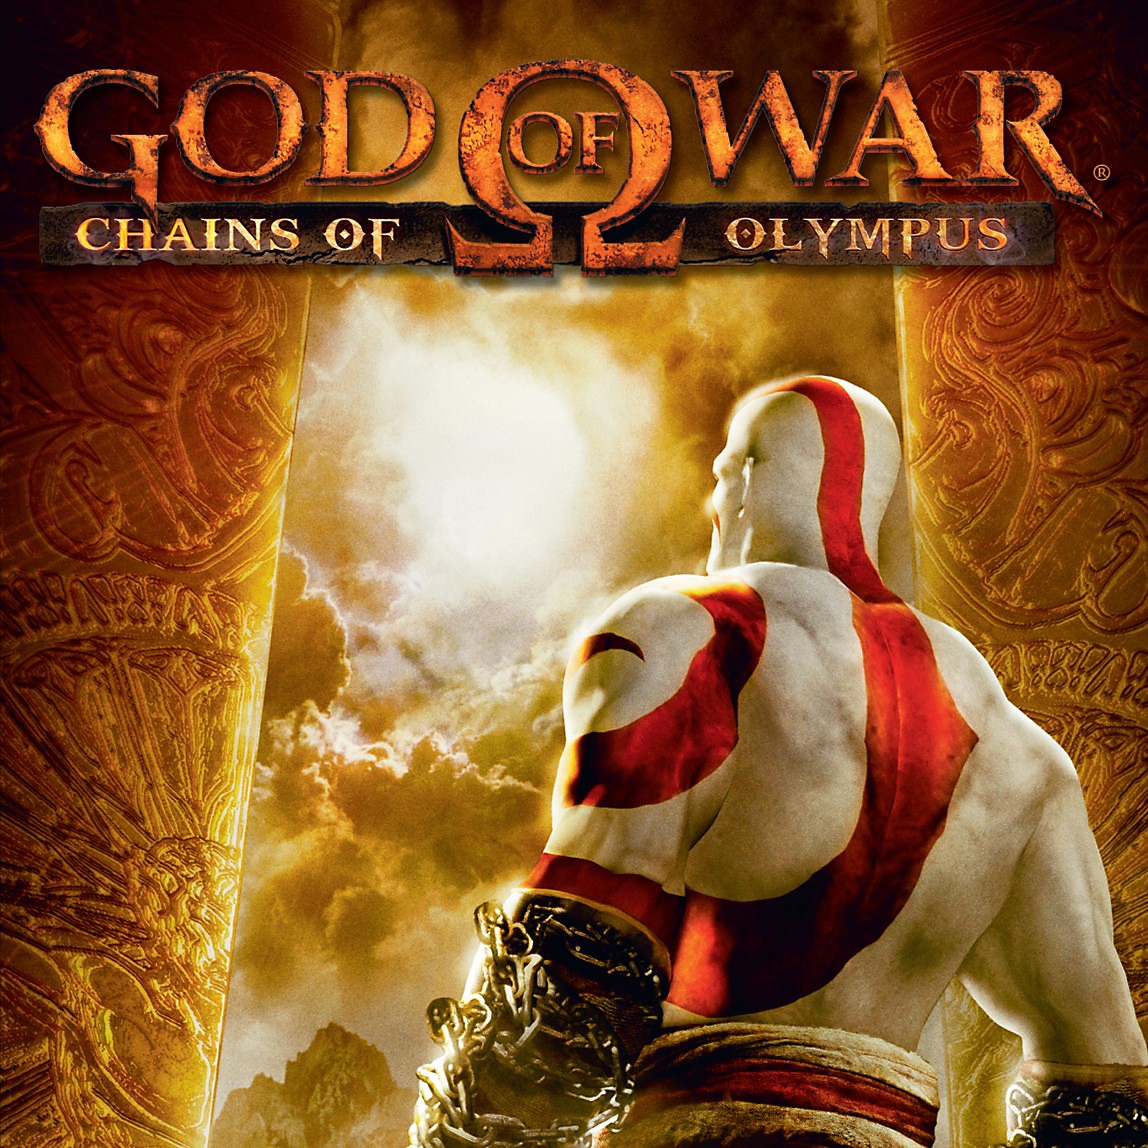 God of War: Ascension – grafika z obchodu